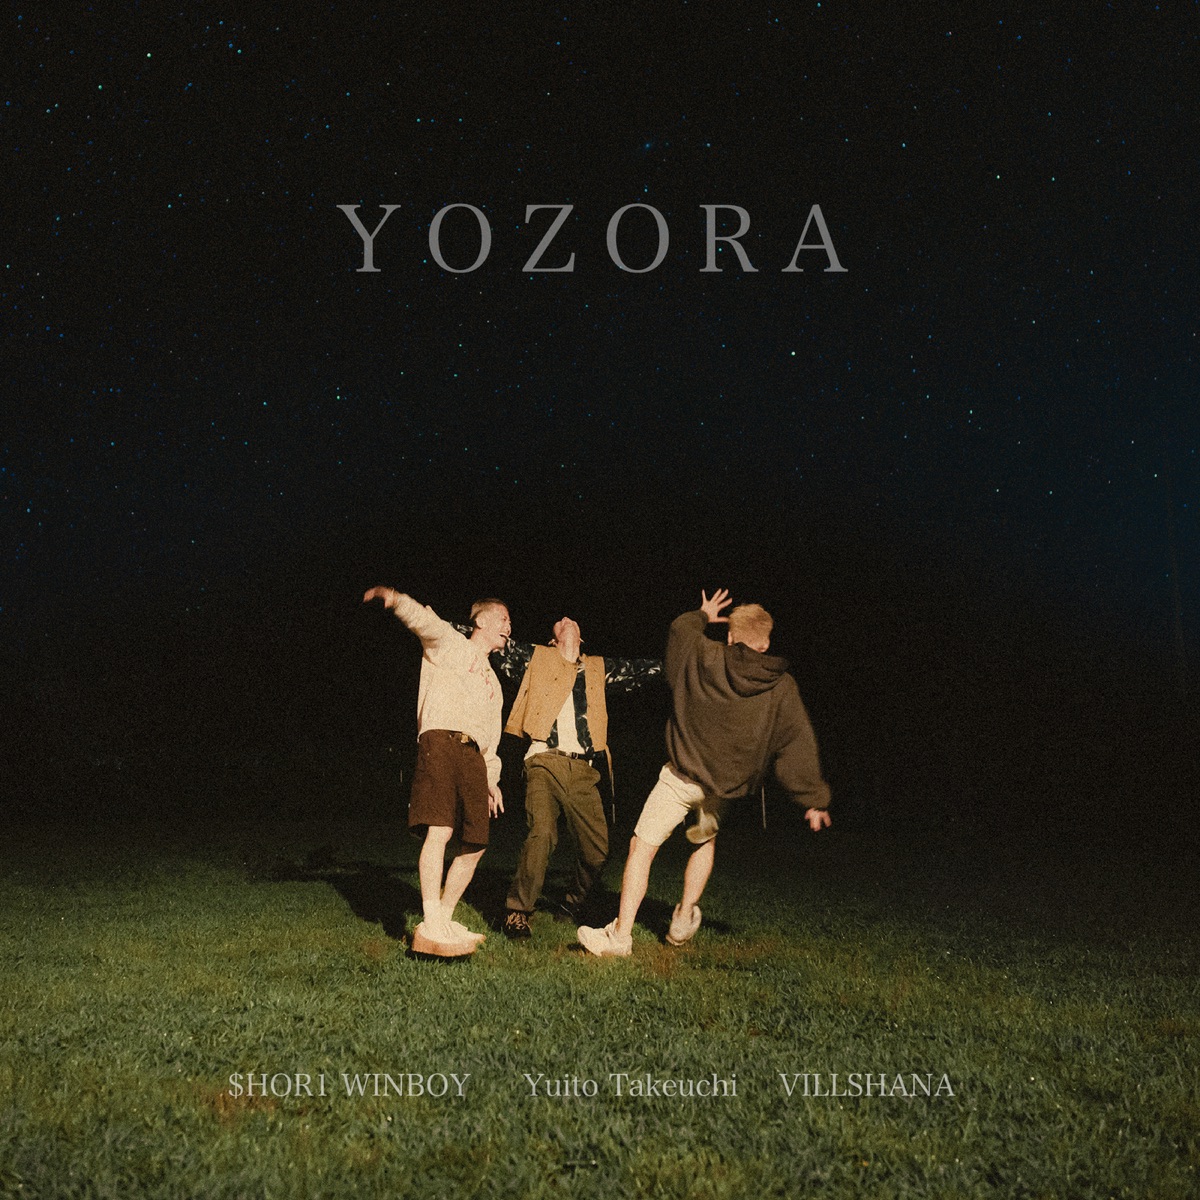 『竹内唯人 - YOZORA (feat. VILLSHANA & $HOR1 WINBOY) 歌詞』収録の『YOZORA (feat. VILLSHANA & $HOR1 WINBOY)』ジャケット